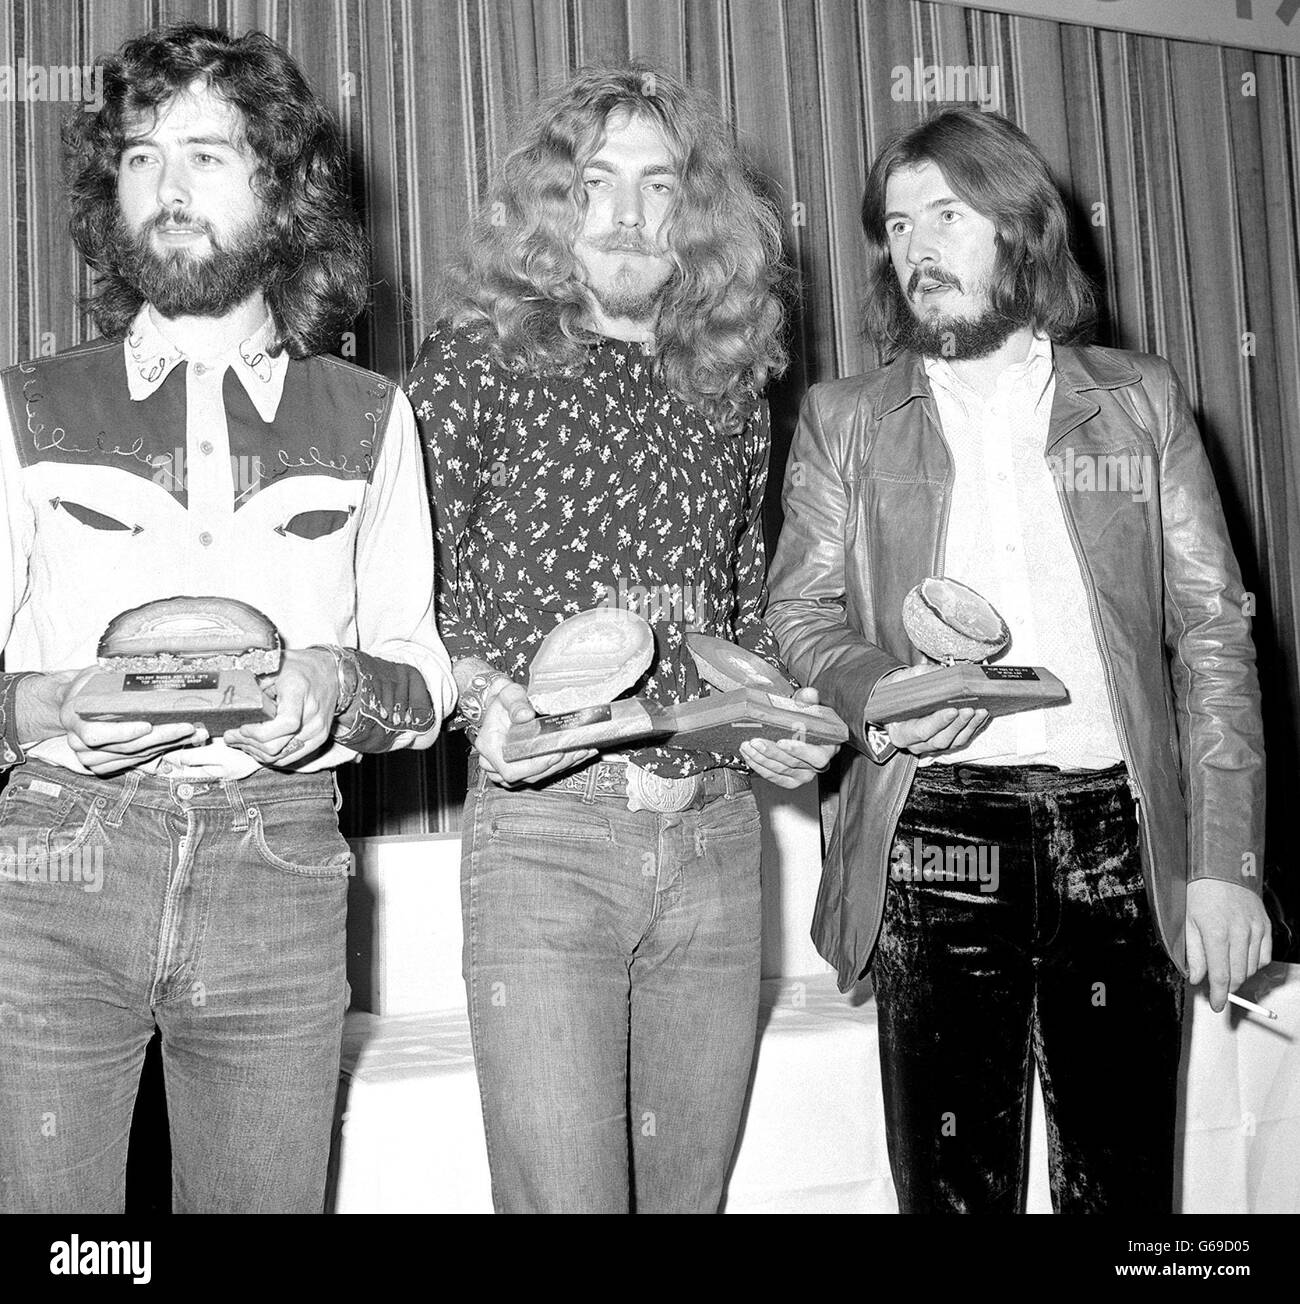 Les membres de LED Zeppelin (l-r) Jimmy page, Robert Plant et John Bonham  après avoir reçu leur prix dans le Melody Maker Pop Poll à Londres.  24/12/04: Le Stairway to Heaven de